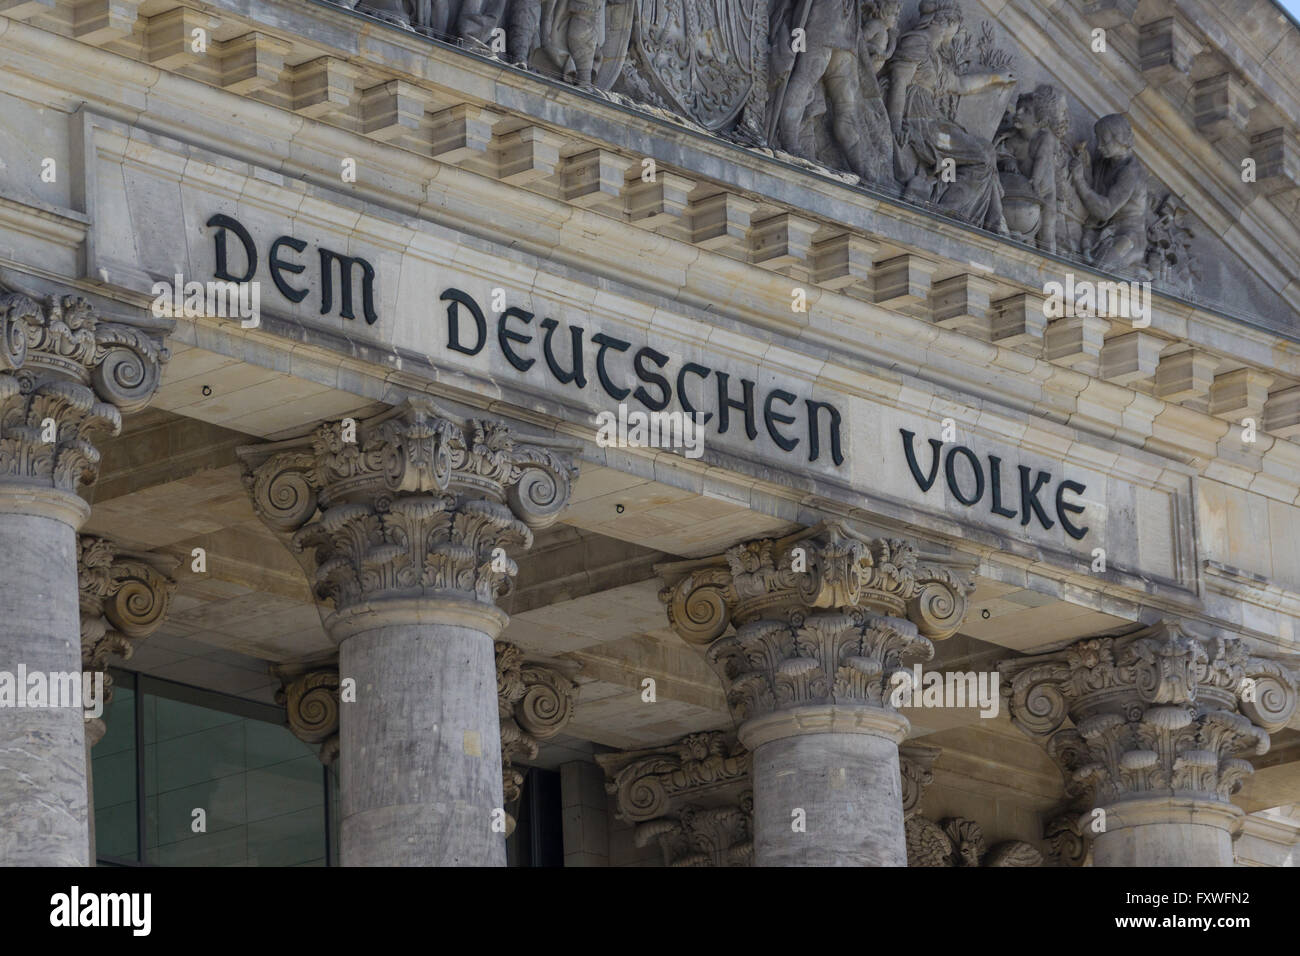 Dettaglio del Reichstag di Berlino, Germania. 'Em Deutschen Volke' ( per il popolo tedesco ). Foto Stock